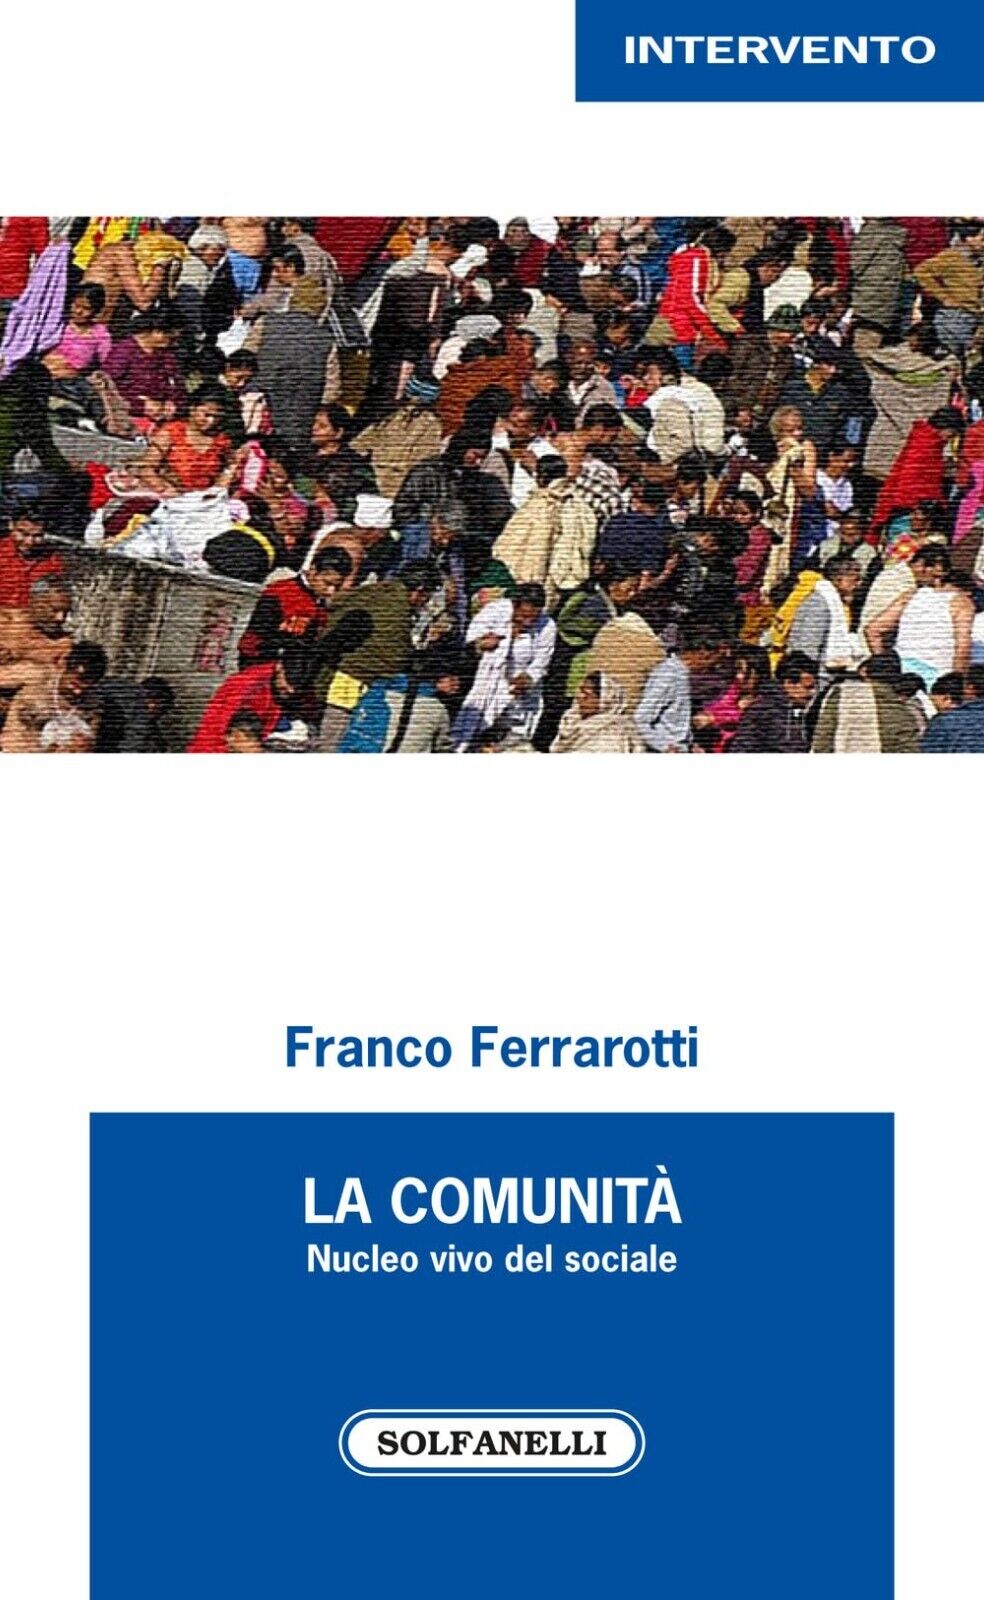  La comunit? nucleo vivo del sociale di Franco Ferrarotti, 2022, Solfanelli